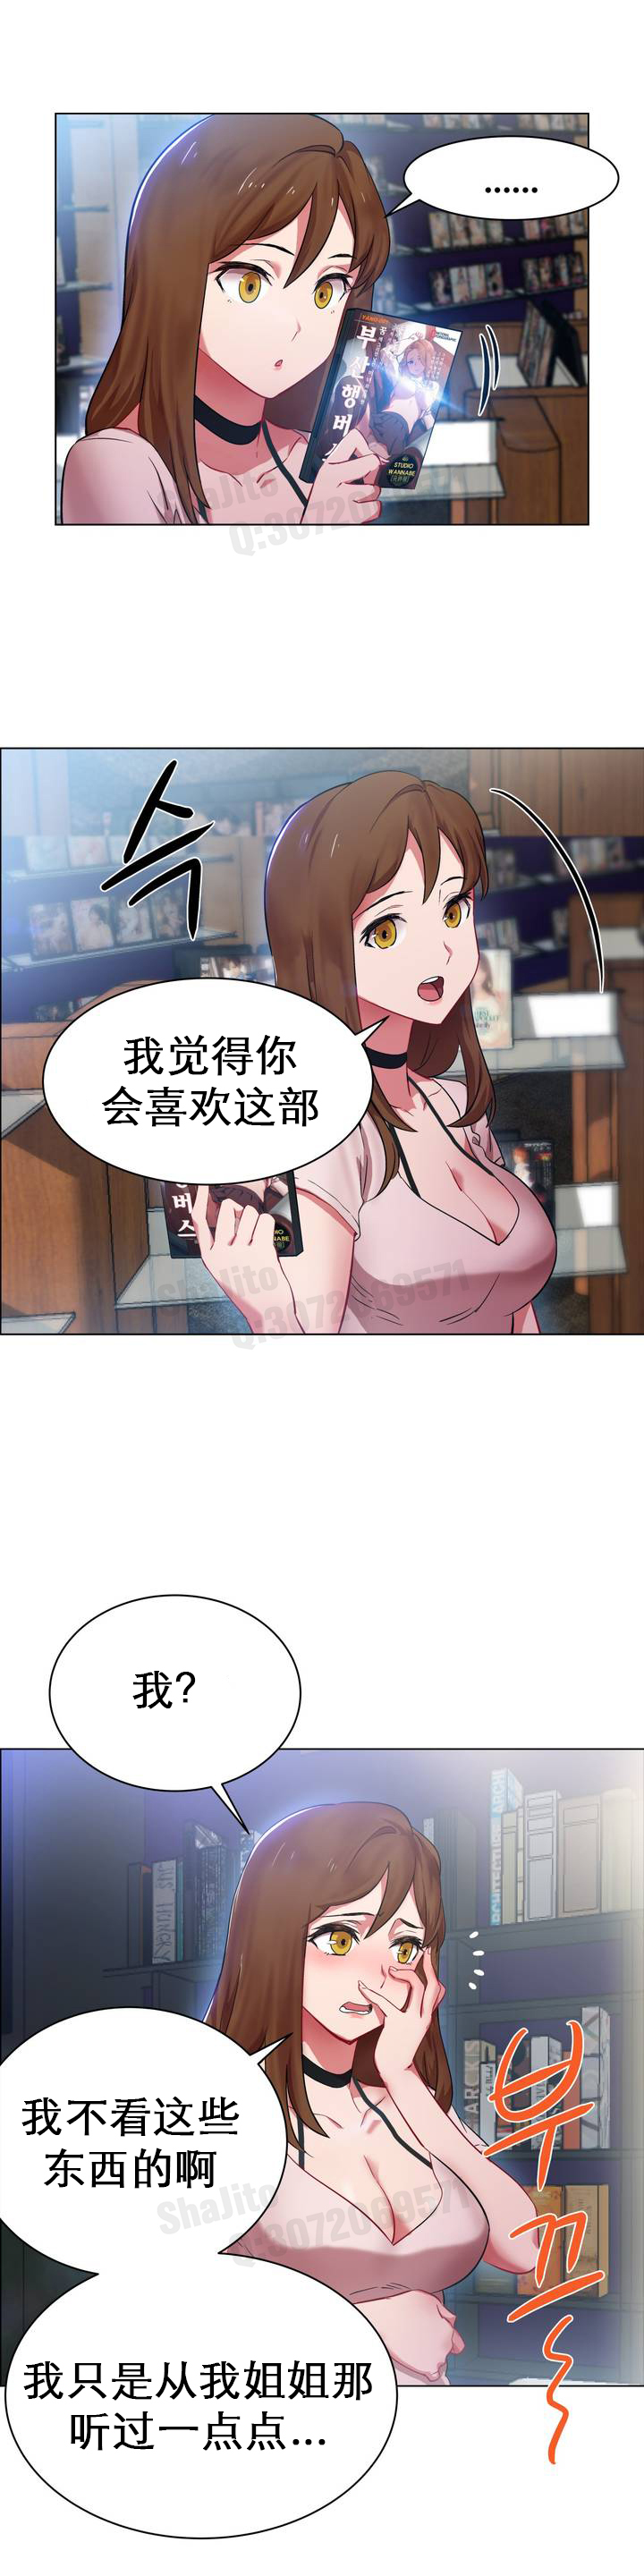 rental girls AV租片女郎 1-3 Chinese 